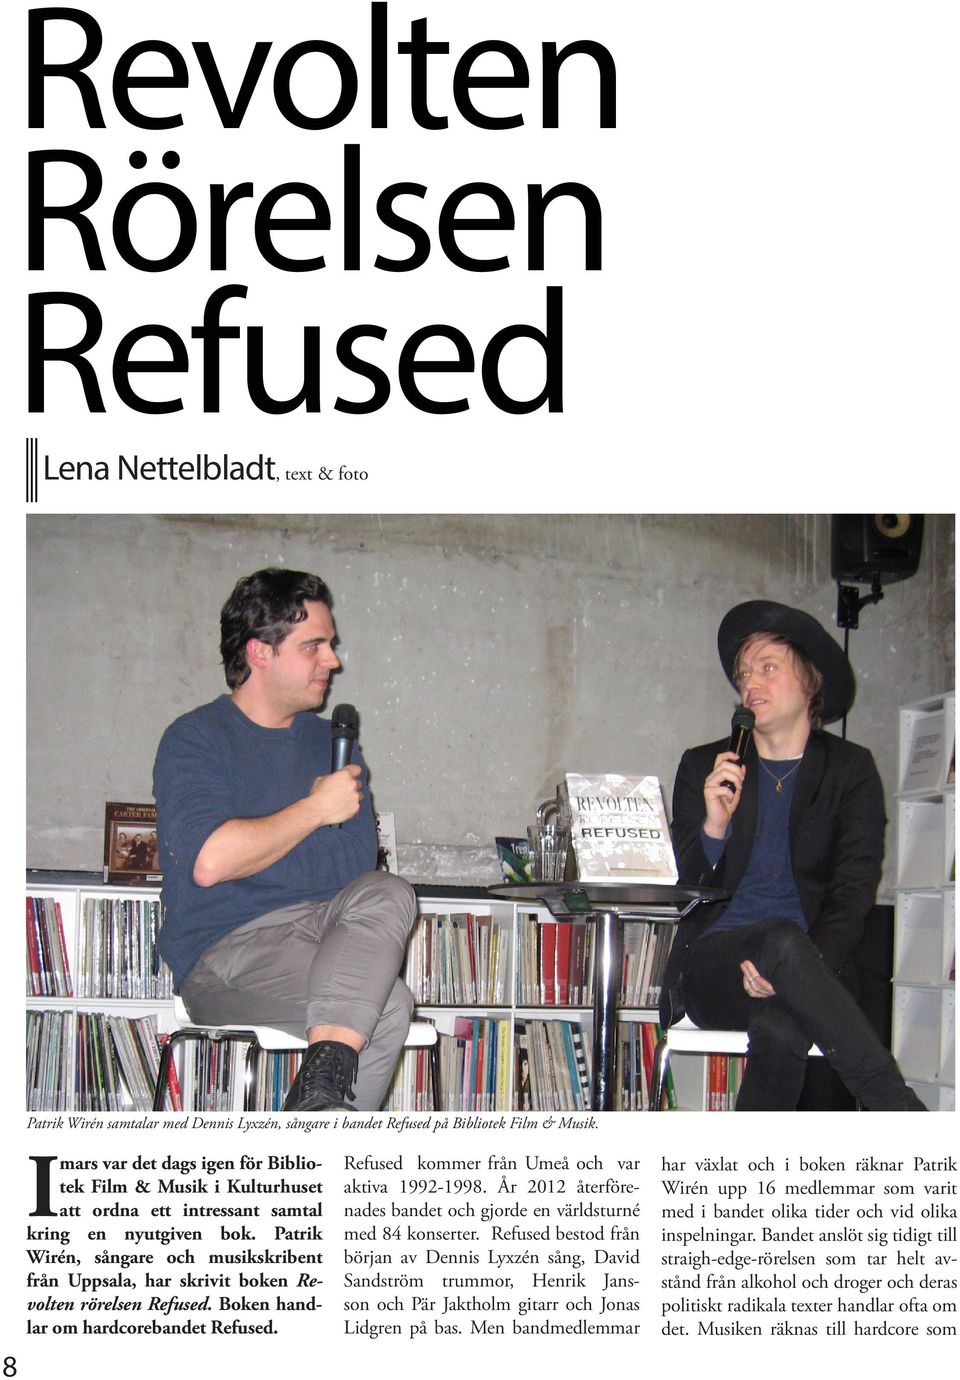 Patrik Wirén, sångare och musikskribent från Uppsala, har skrivit boken Revolten rörelsen Refused. Boken handlar om hardcorebandet Refused. Refused kommer från Umeå och var aktiva 1992-1998.